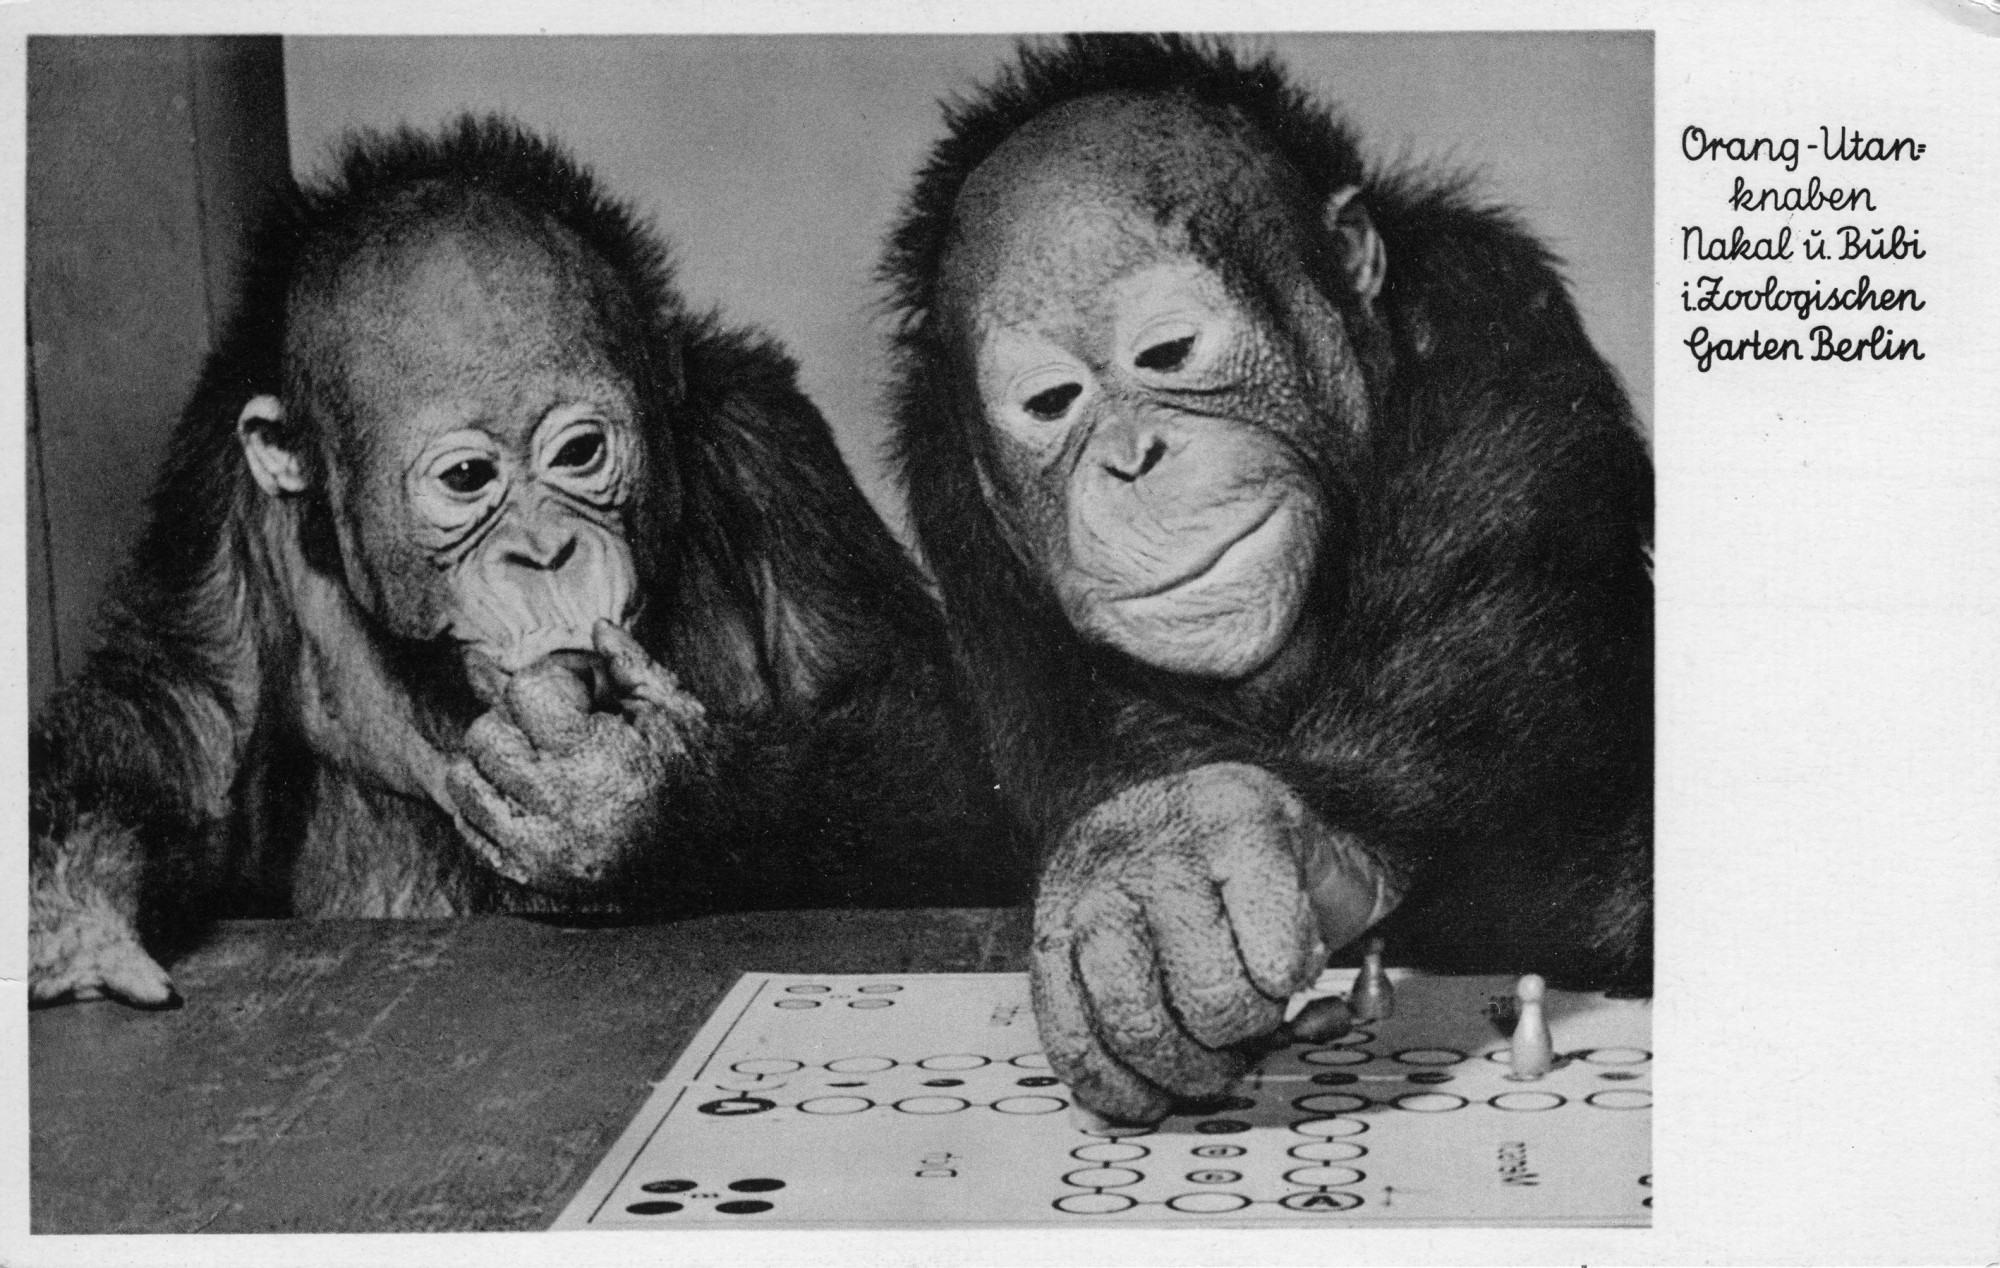 Schwarz-weiß Postkarte. Text: Orang-Utanknaben Nakal u. Bubi i. Zoologischen Garten Berlin. Bild: Affe links mit Hand am Mund, blickt auf Spielbrett. Affe rechts versetzt Spielfigur.